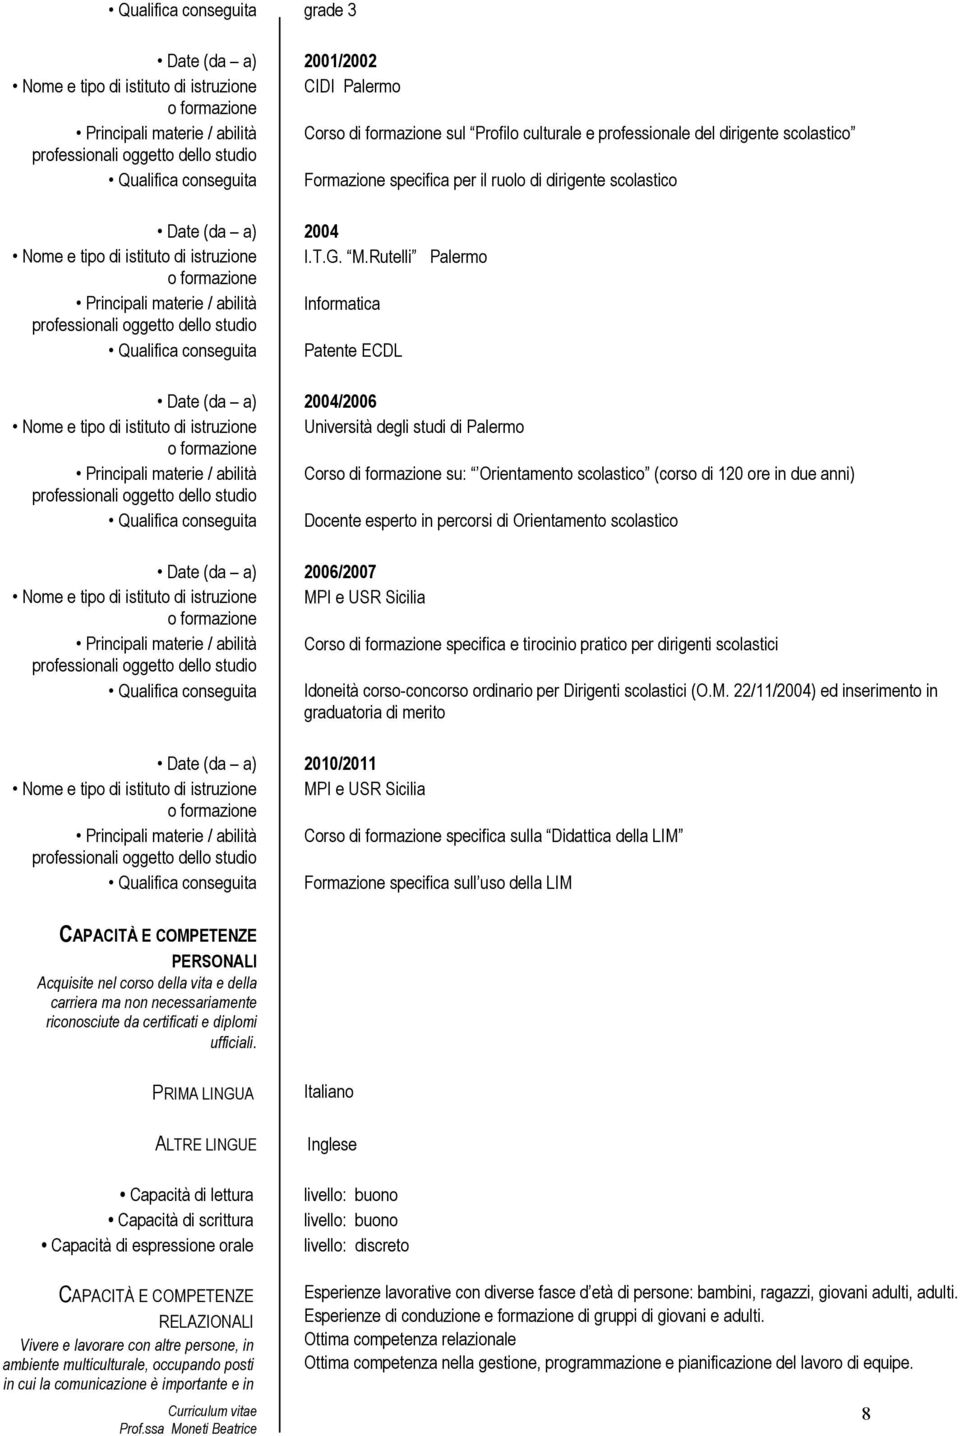 Rutelli Palermo Principali materie / abilità Informatica Qualifica conseguita Patente ECDL Date (da a) 2004/2006 Principali materie / abilità Corso di formazione su: Orientamento scolastico (corso di